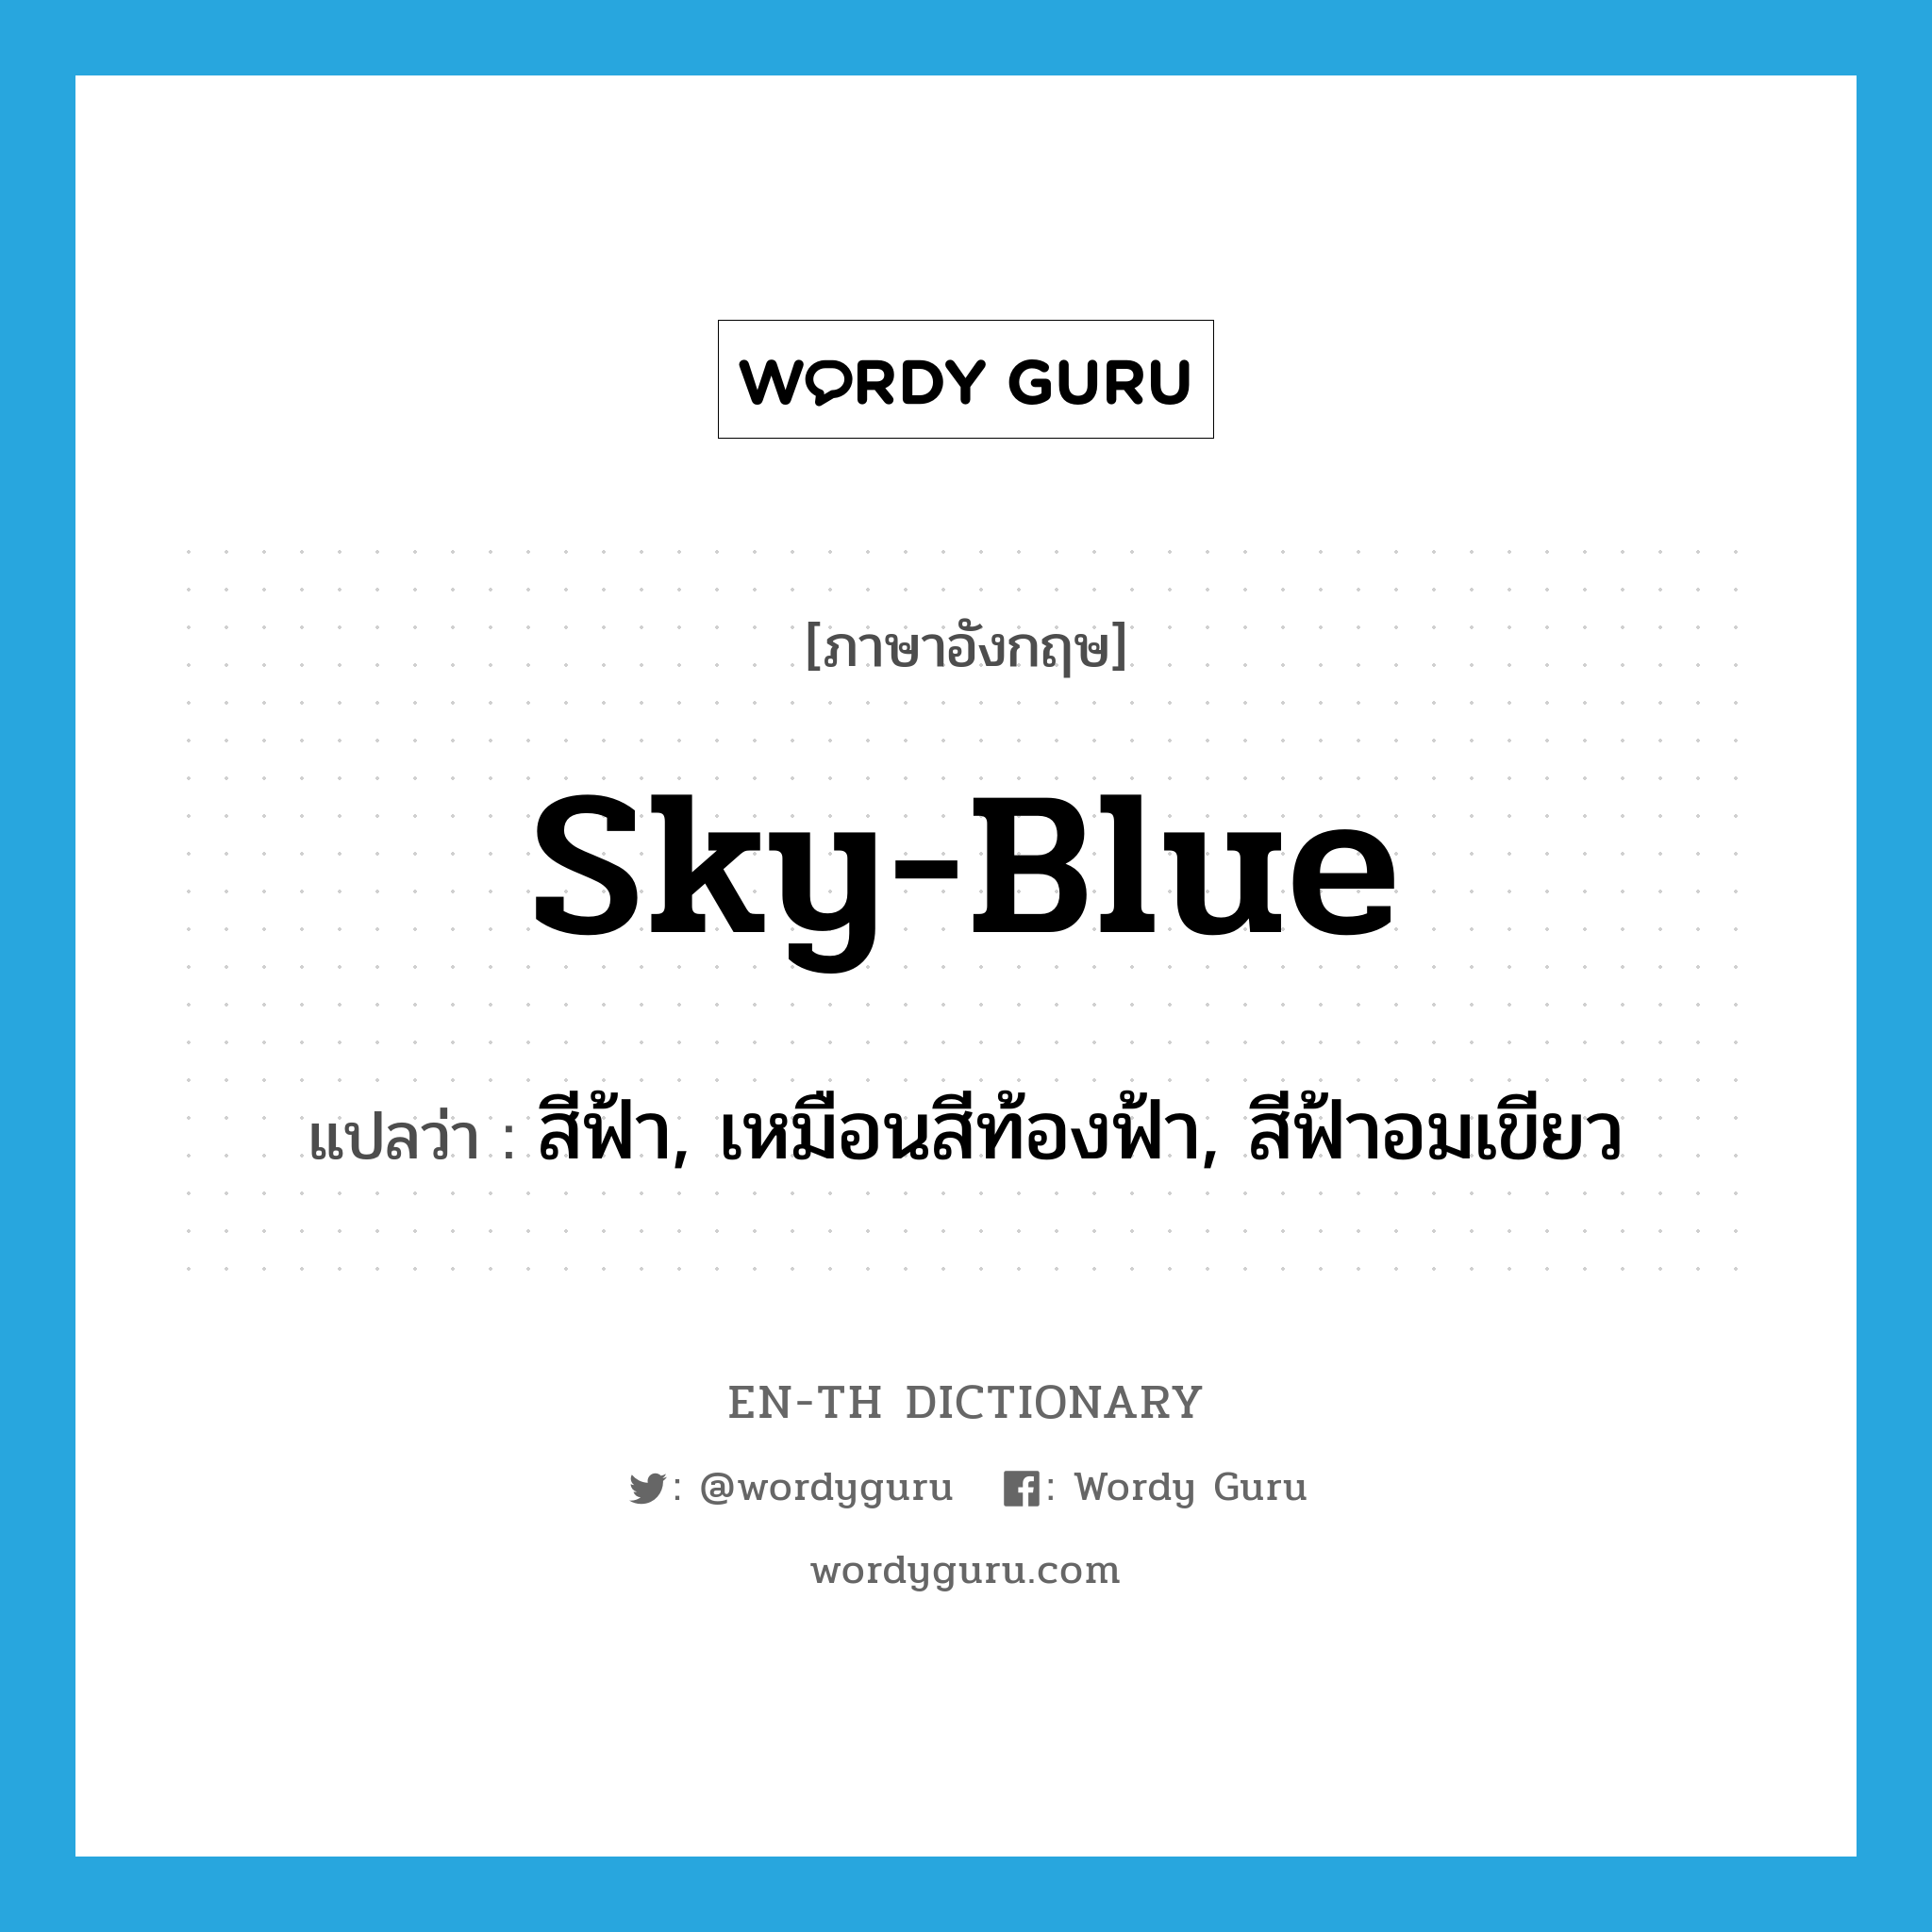 sky-blue แปลว่า?, คำศัพท์ภาษาอังกฤษ sky-blue แปลว่า สีฟ้า, เหมือนสีท้องฟ้า, สีฟ้าอมเขียว ประเภท ADJ หมวด ADJ